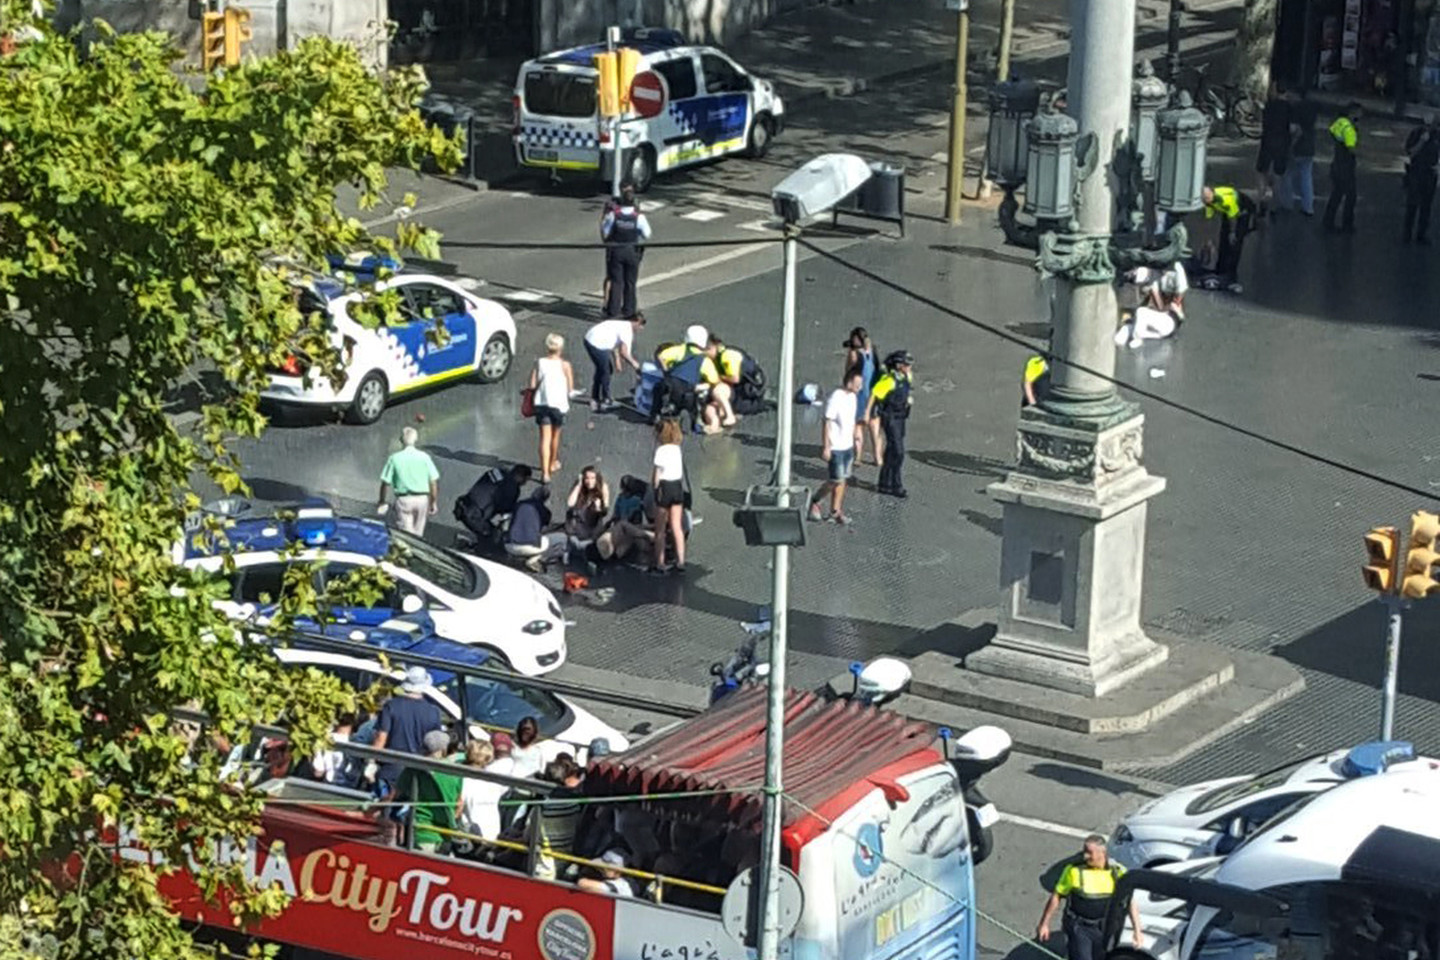  Ispanijoje surengti du teroro išpuoliai, vieną iš jų policijai pavyko sustabdyti.<br> AP nuotr.